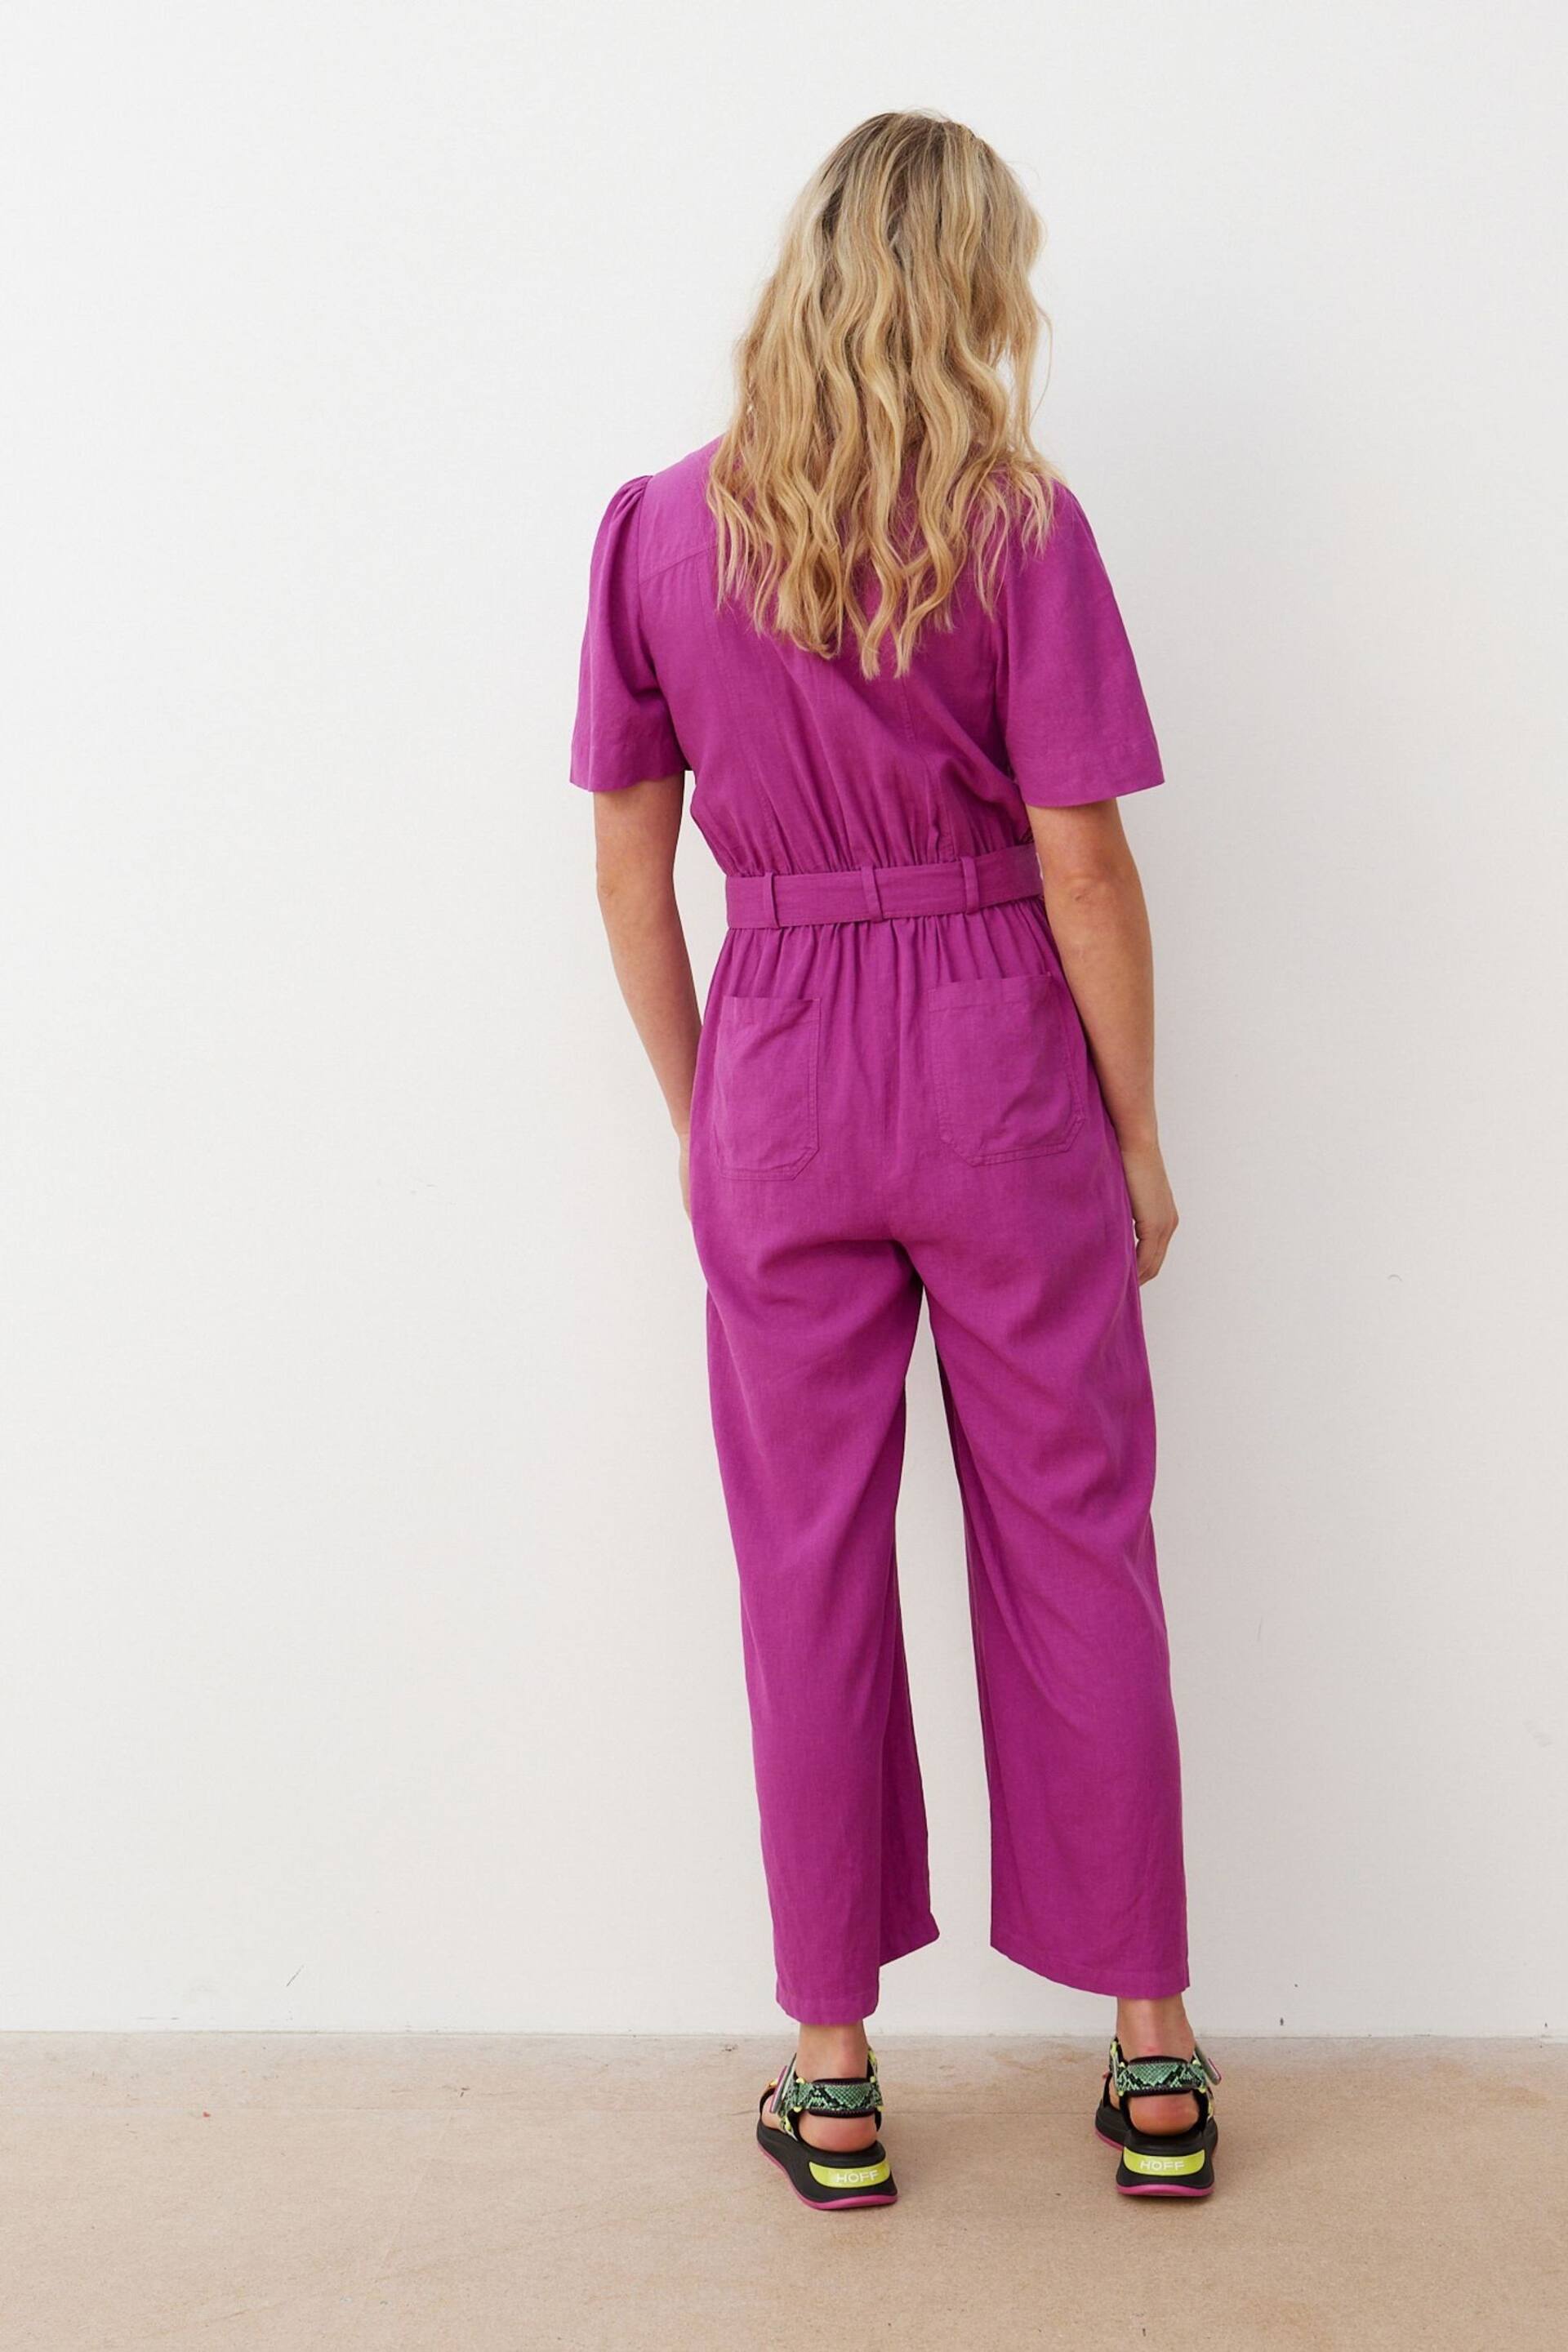 Oliver Bonas Purple Belted Linen Jumpsuit - Image 7 of 8